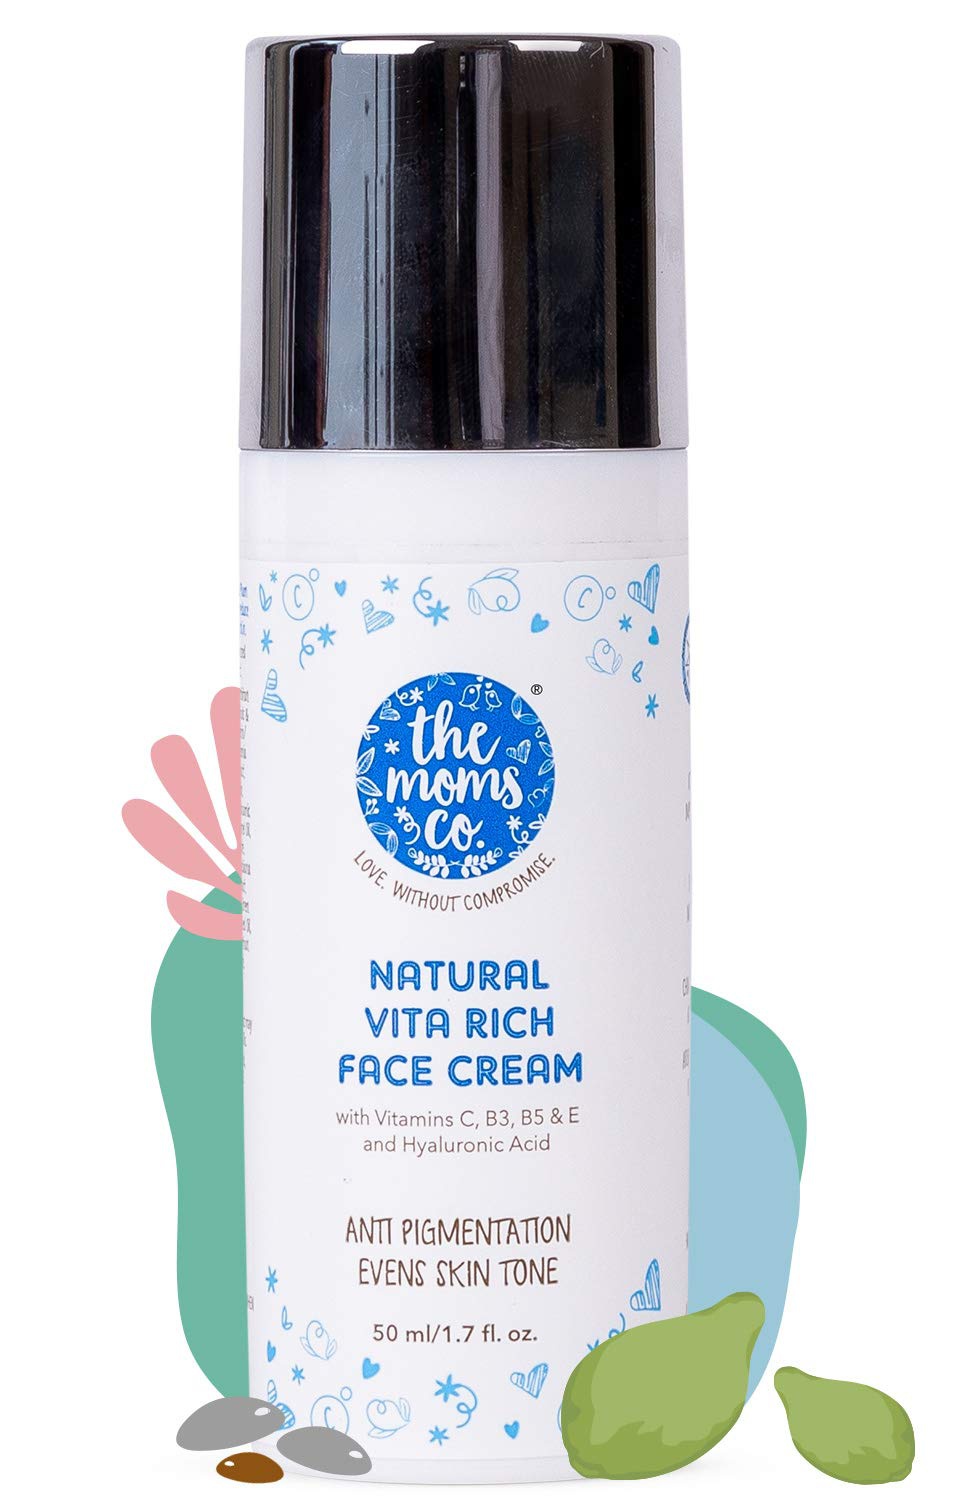 The Mom's Co. Natural Vita Rich Face Cream